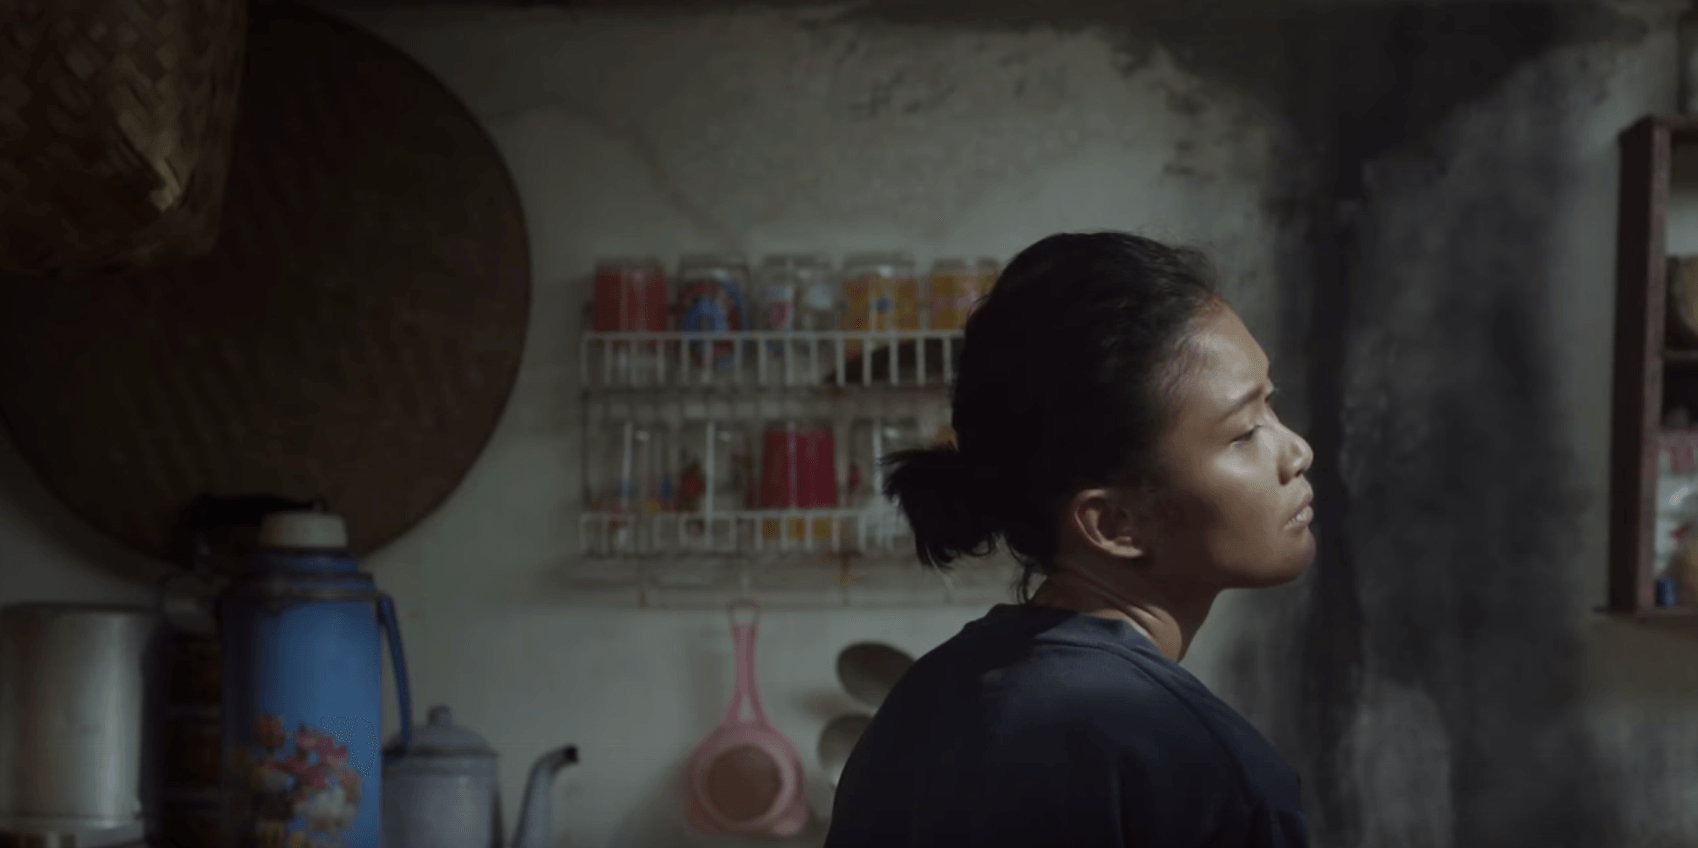 Aktris Marissa Anita berperan sebagai Sipon, istri aktivis Wiji Thukul, dalam film 'Istirahatlah Kata-Kata'. Screenshot dari trailer di YouTube 